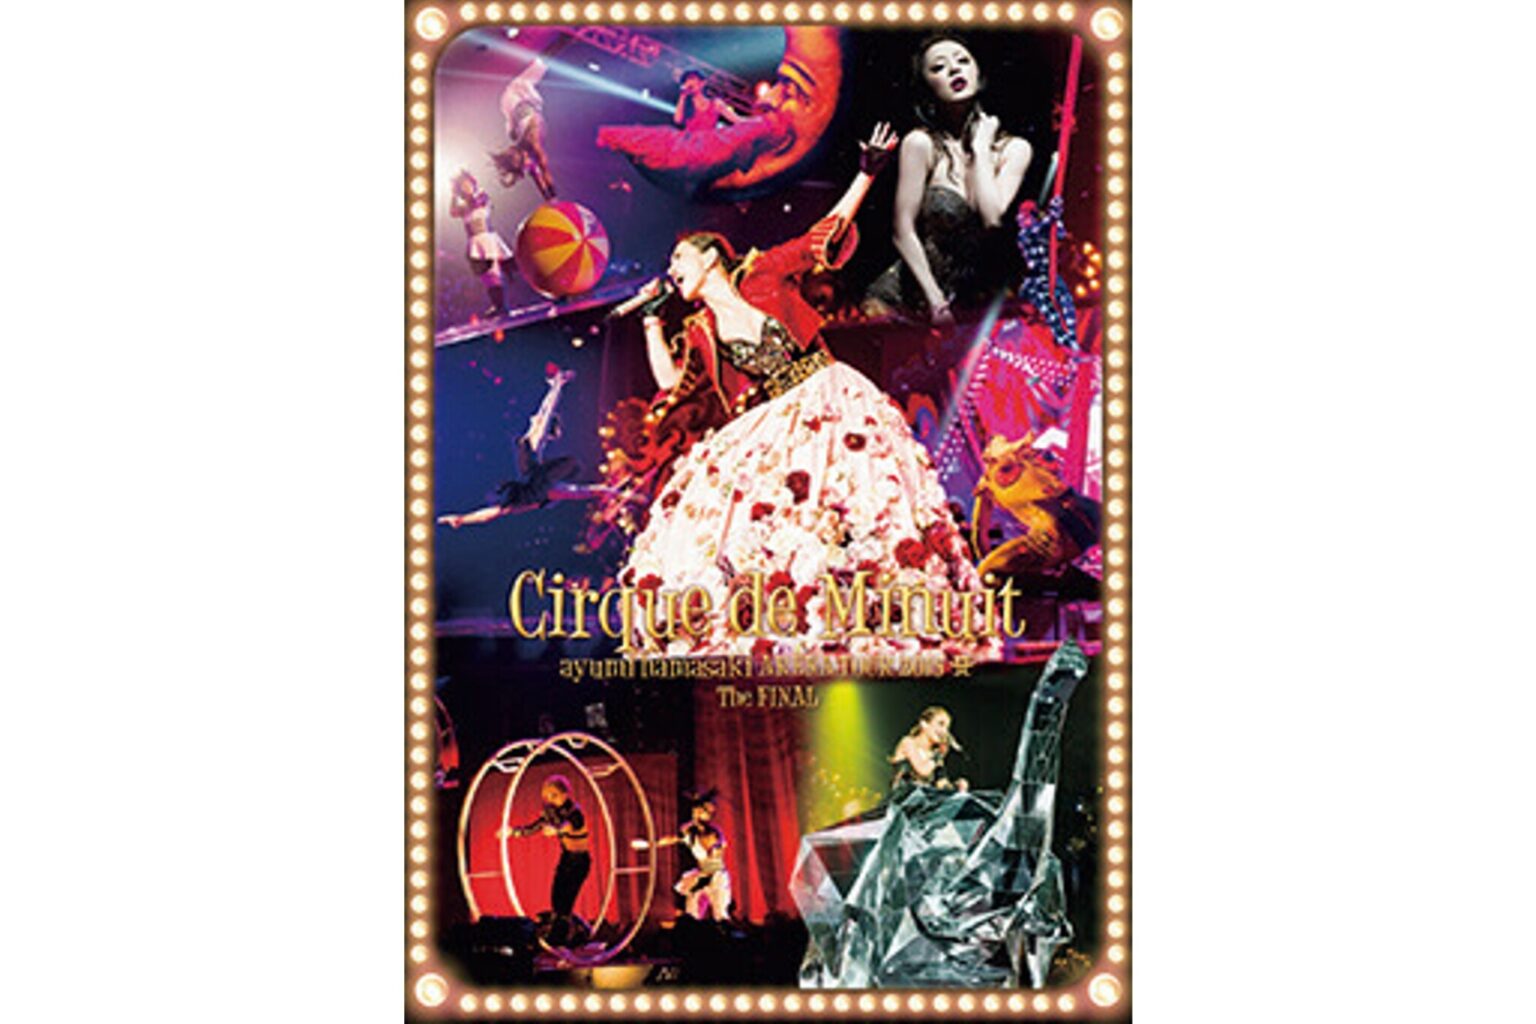 2015年、4月から約3カ月にわたるアリーナツアーで全国10カ所22公演、約17万3000人を動員したツアーの横浜アリーナ公演がパッケージ化した。／平野さん、ゆっきゅんおすすめのライブDVD『ayumi hamasaki ARENA TOUR 2015 Cirque de Minuit ～真夜中のサーカス～ The FINAL』。浜崎あゆみのライブエンターテインメントの世界をたっぷりと味わうことができる。